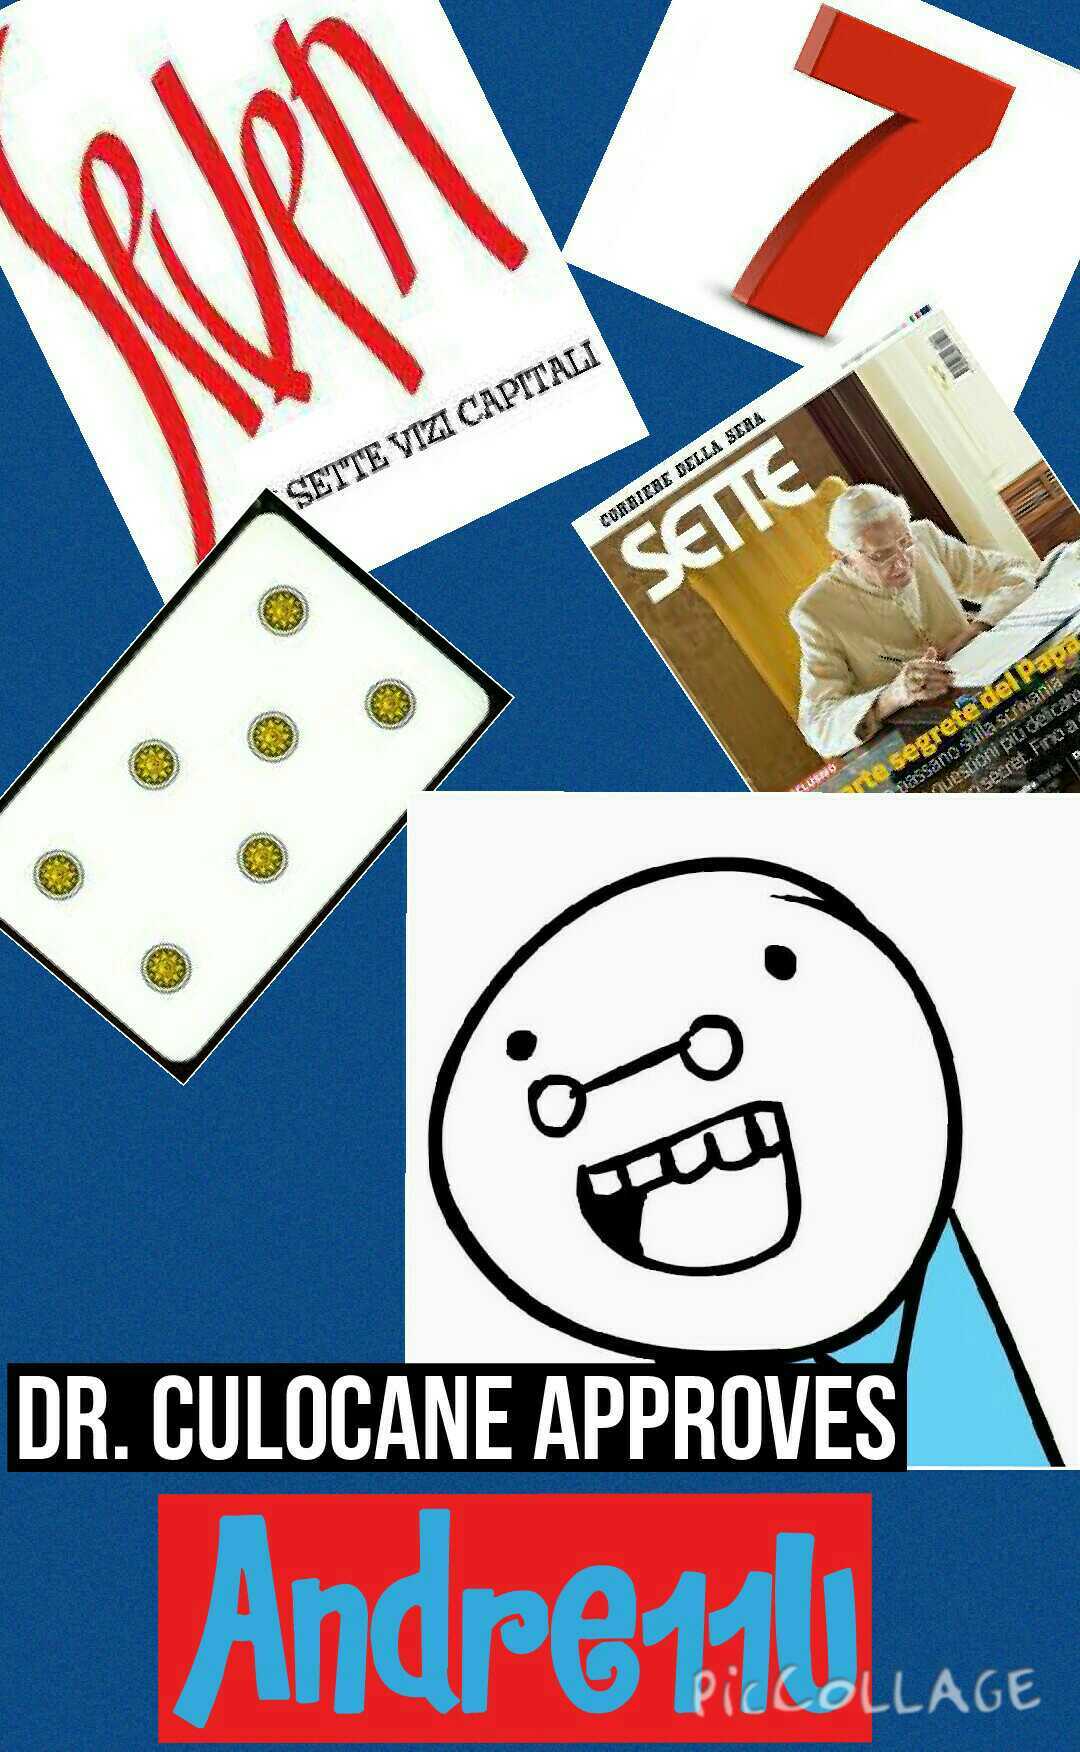 7 dr. Culocane scottecs - meme